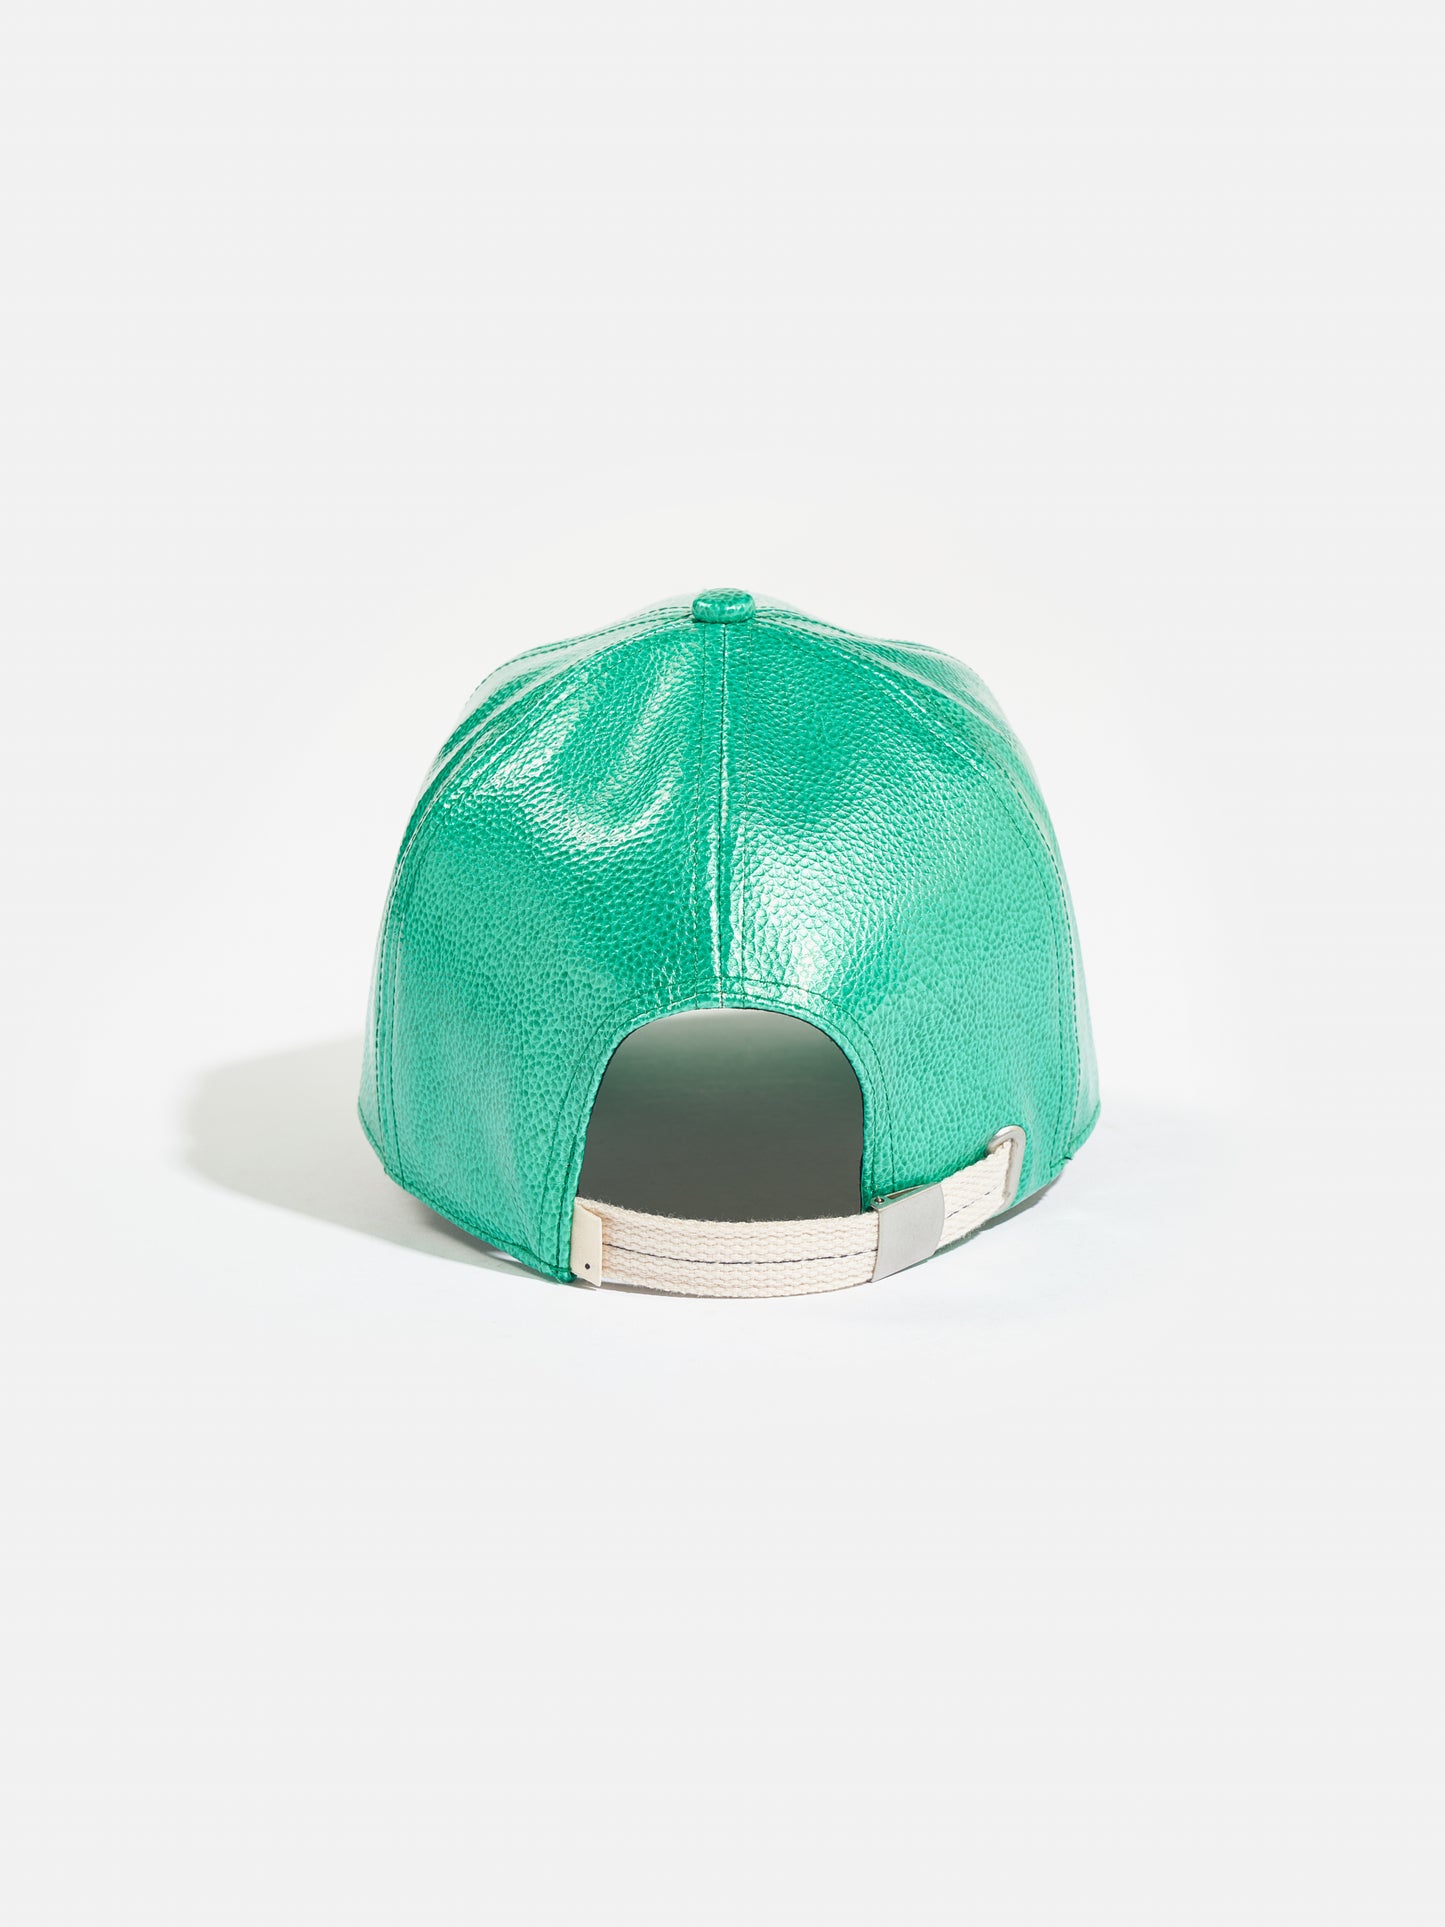 Bellerose - Dace Hat: Emerald